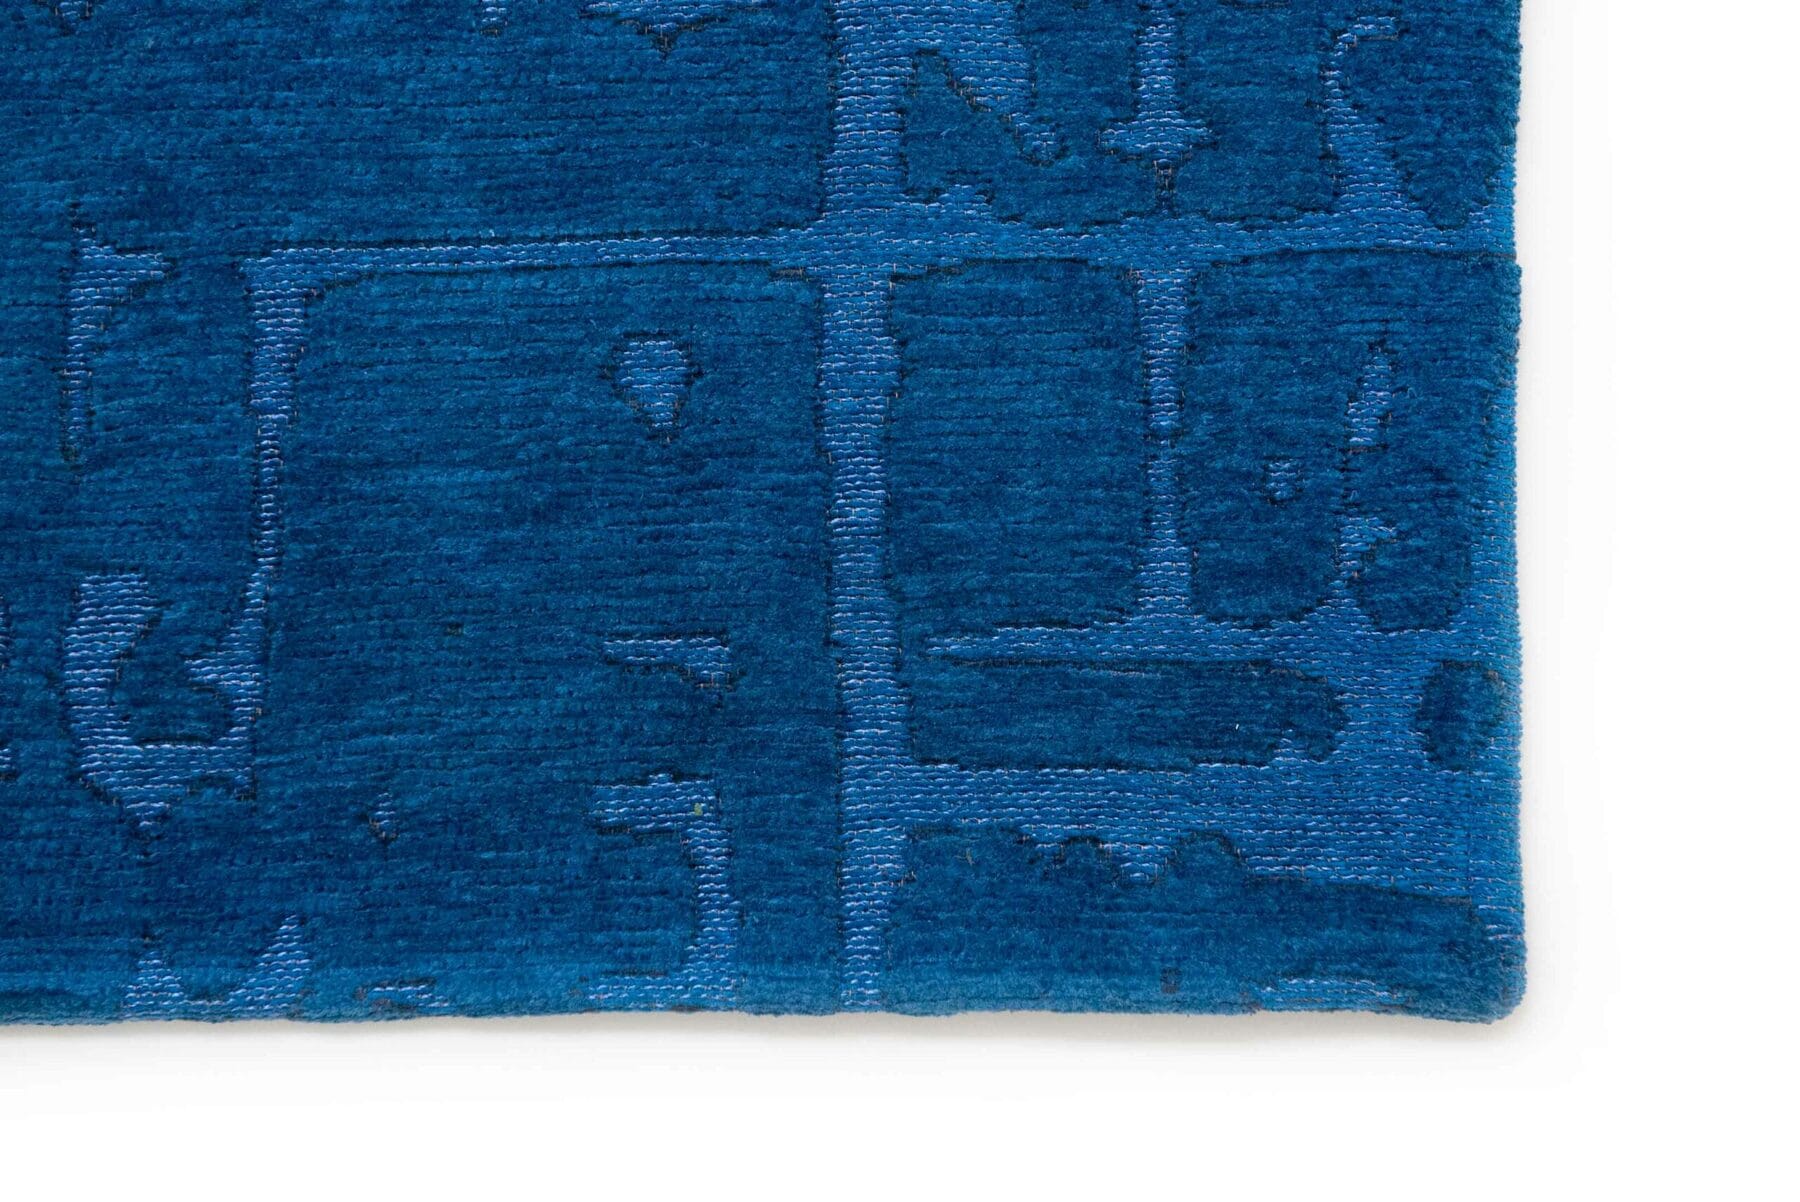 Structures Collection Baobab Suarez Blue 9250 rug by Louis De Poortere